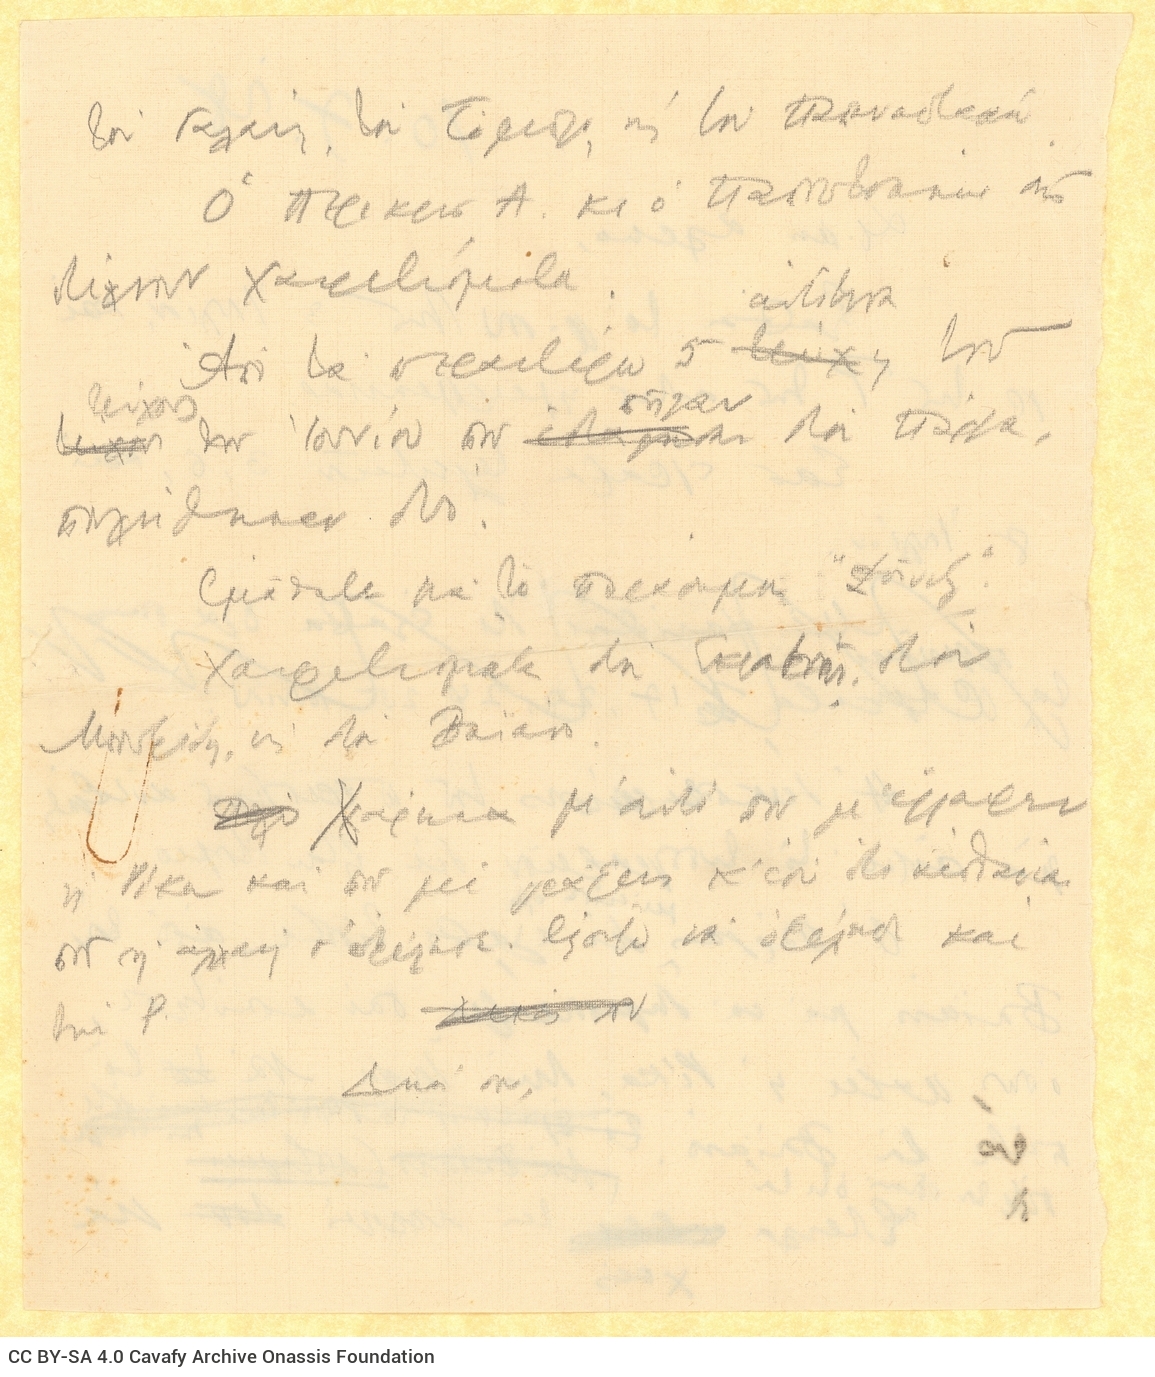 Χειρόγραφο σχέδιο επιστολής προς τον Αλέκο [Σεγκόπουλο] στις δύο όψε